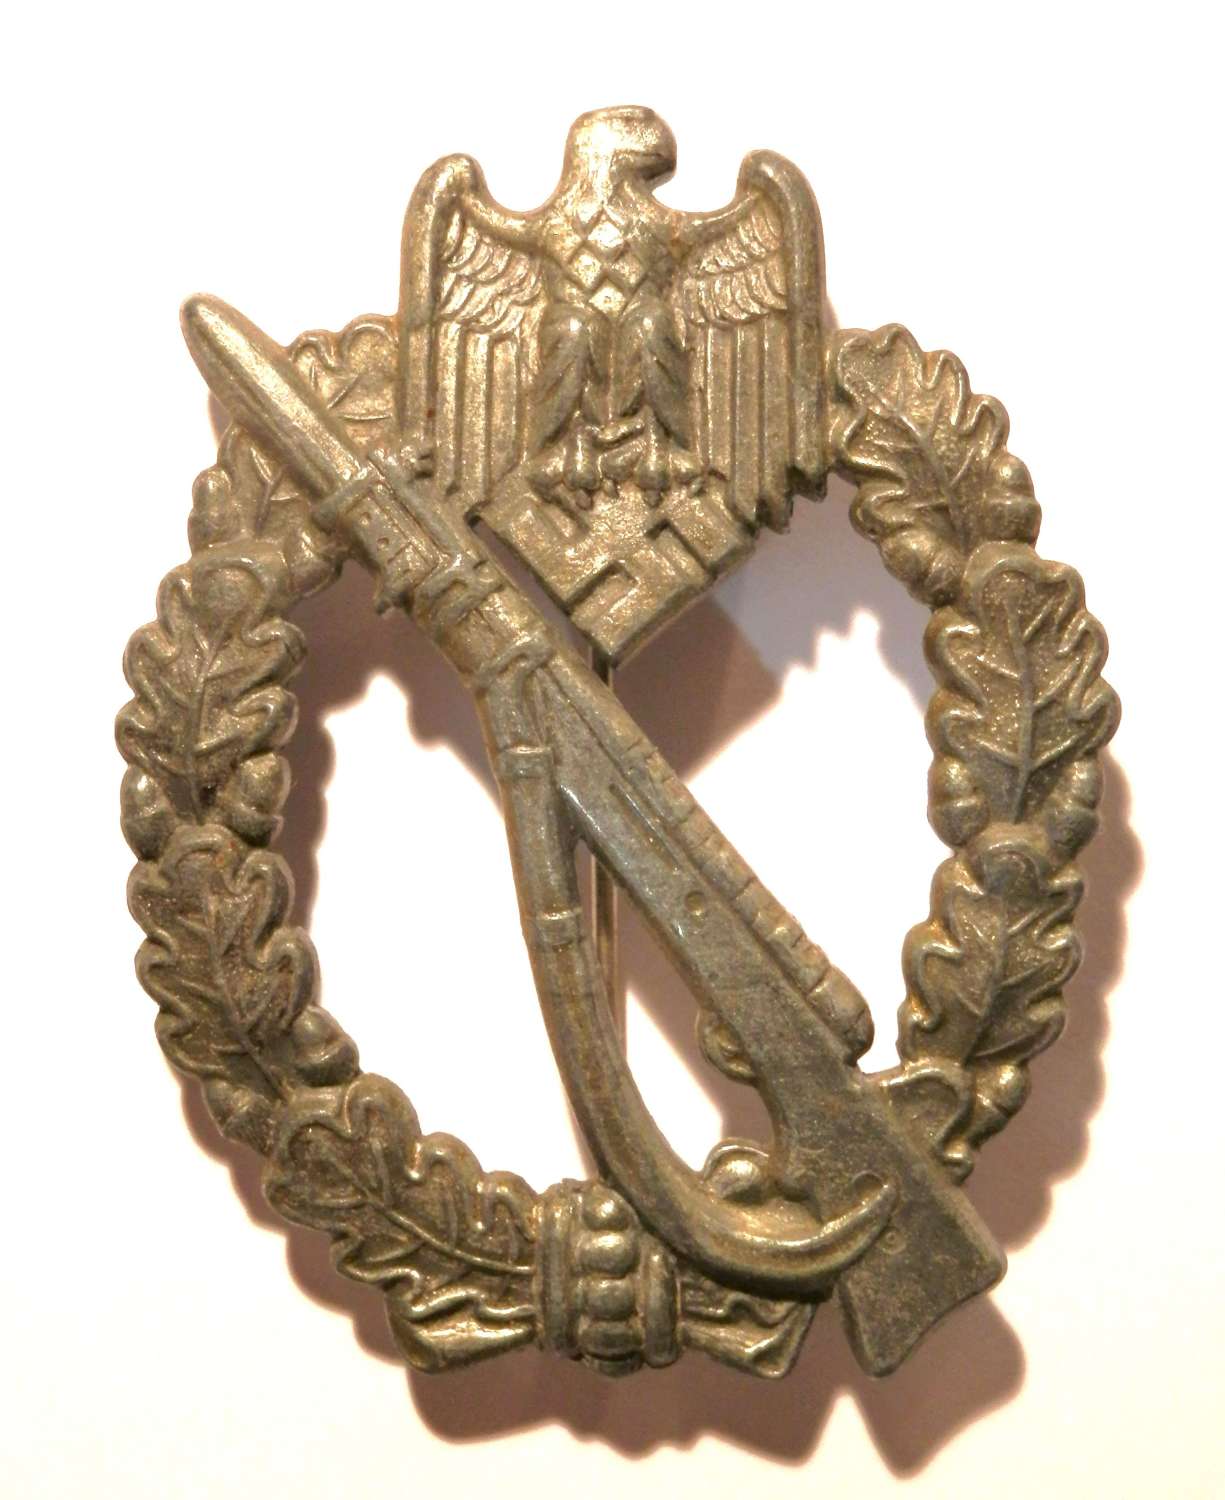 German Infantry Assault Badge. By ‘JFS’, 'Josef Feix und Sohne/Gablonz